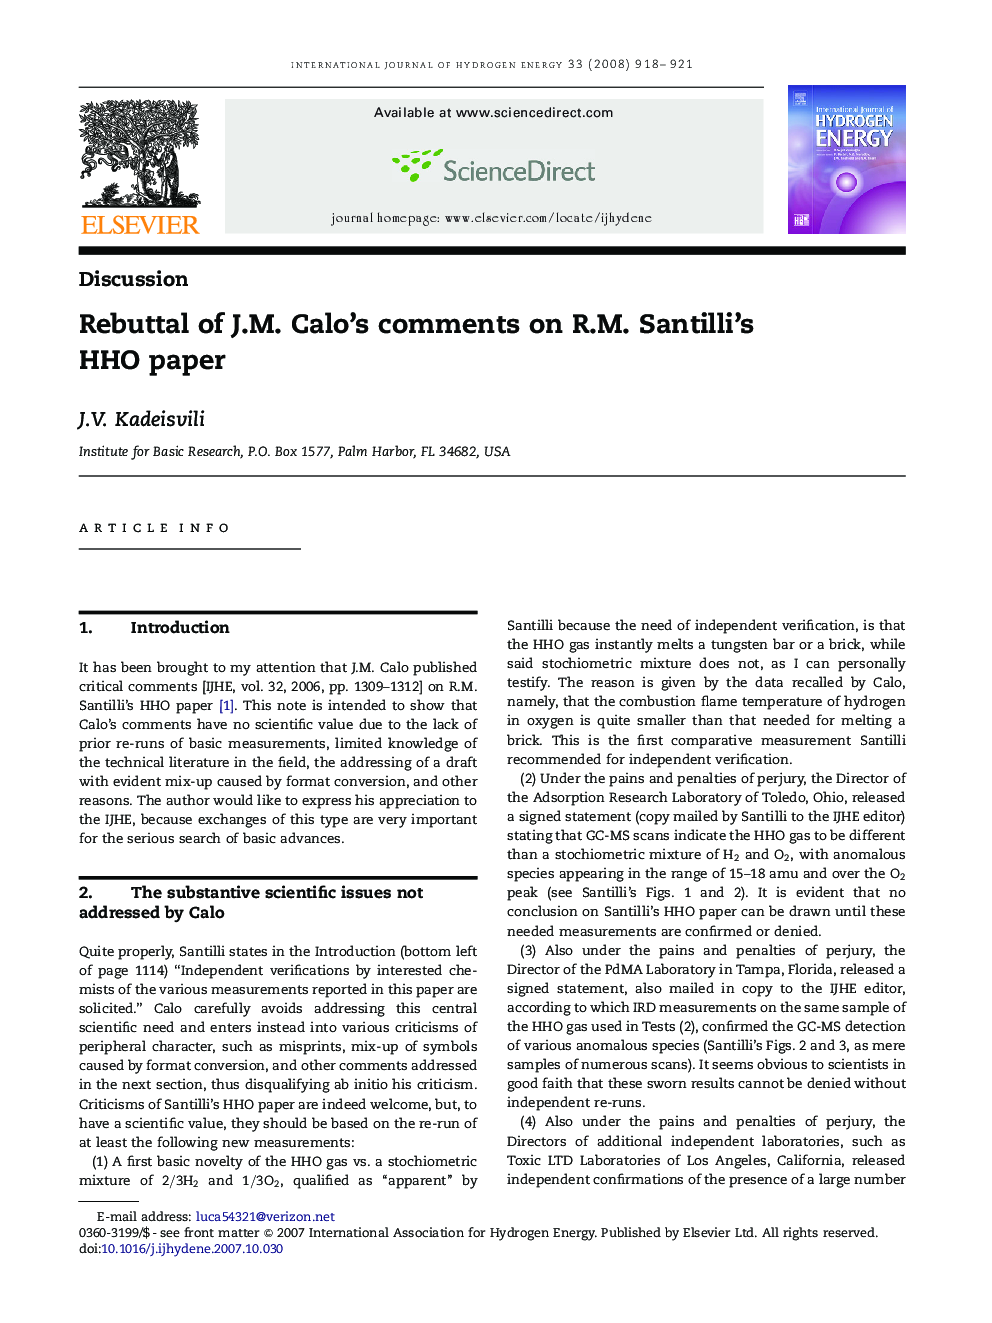 Rebuttal of J.M. Calo's comments on R.M. Santilli's HHO paper